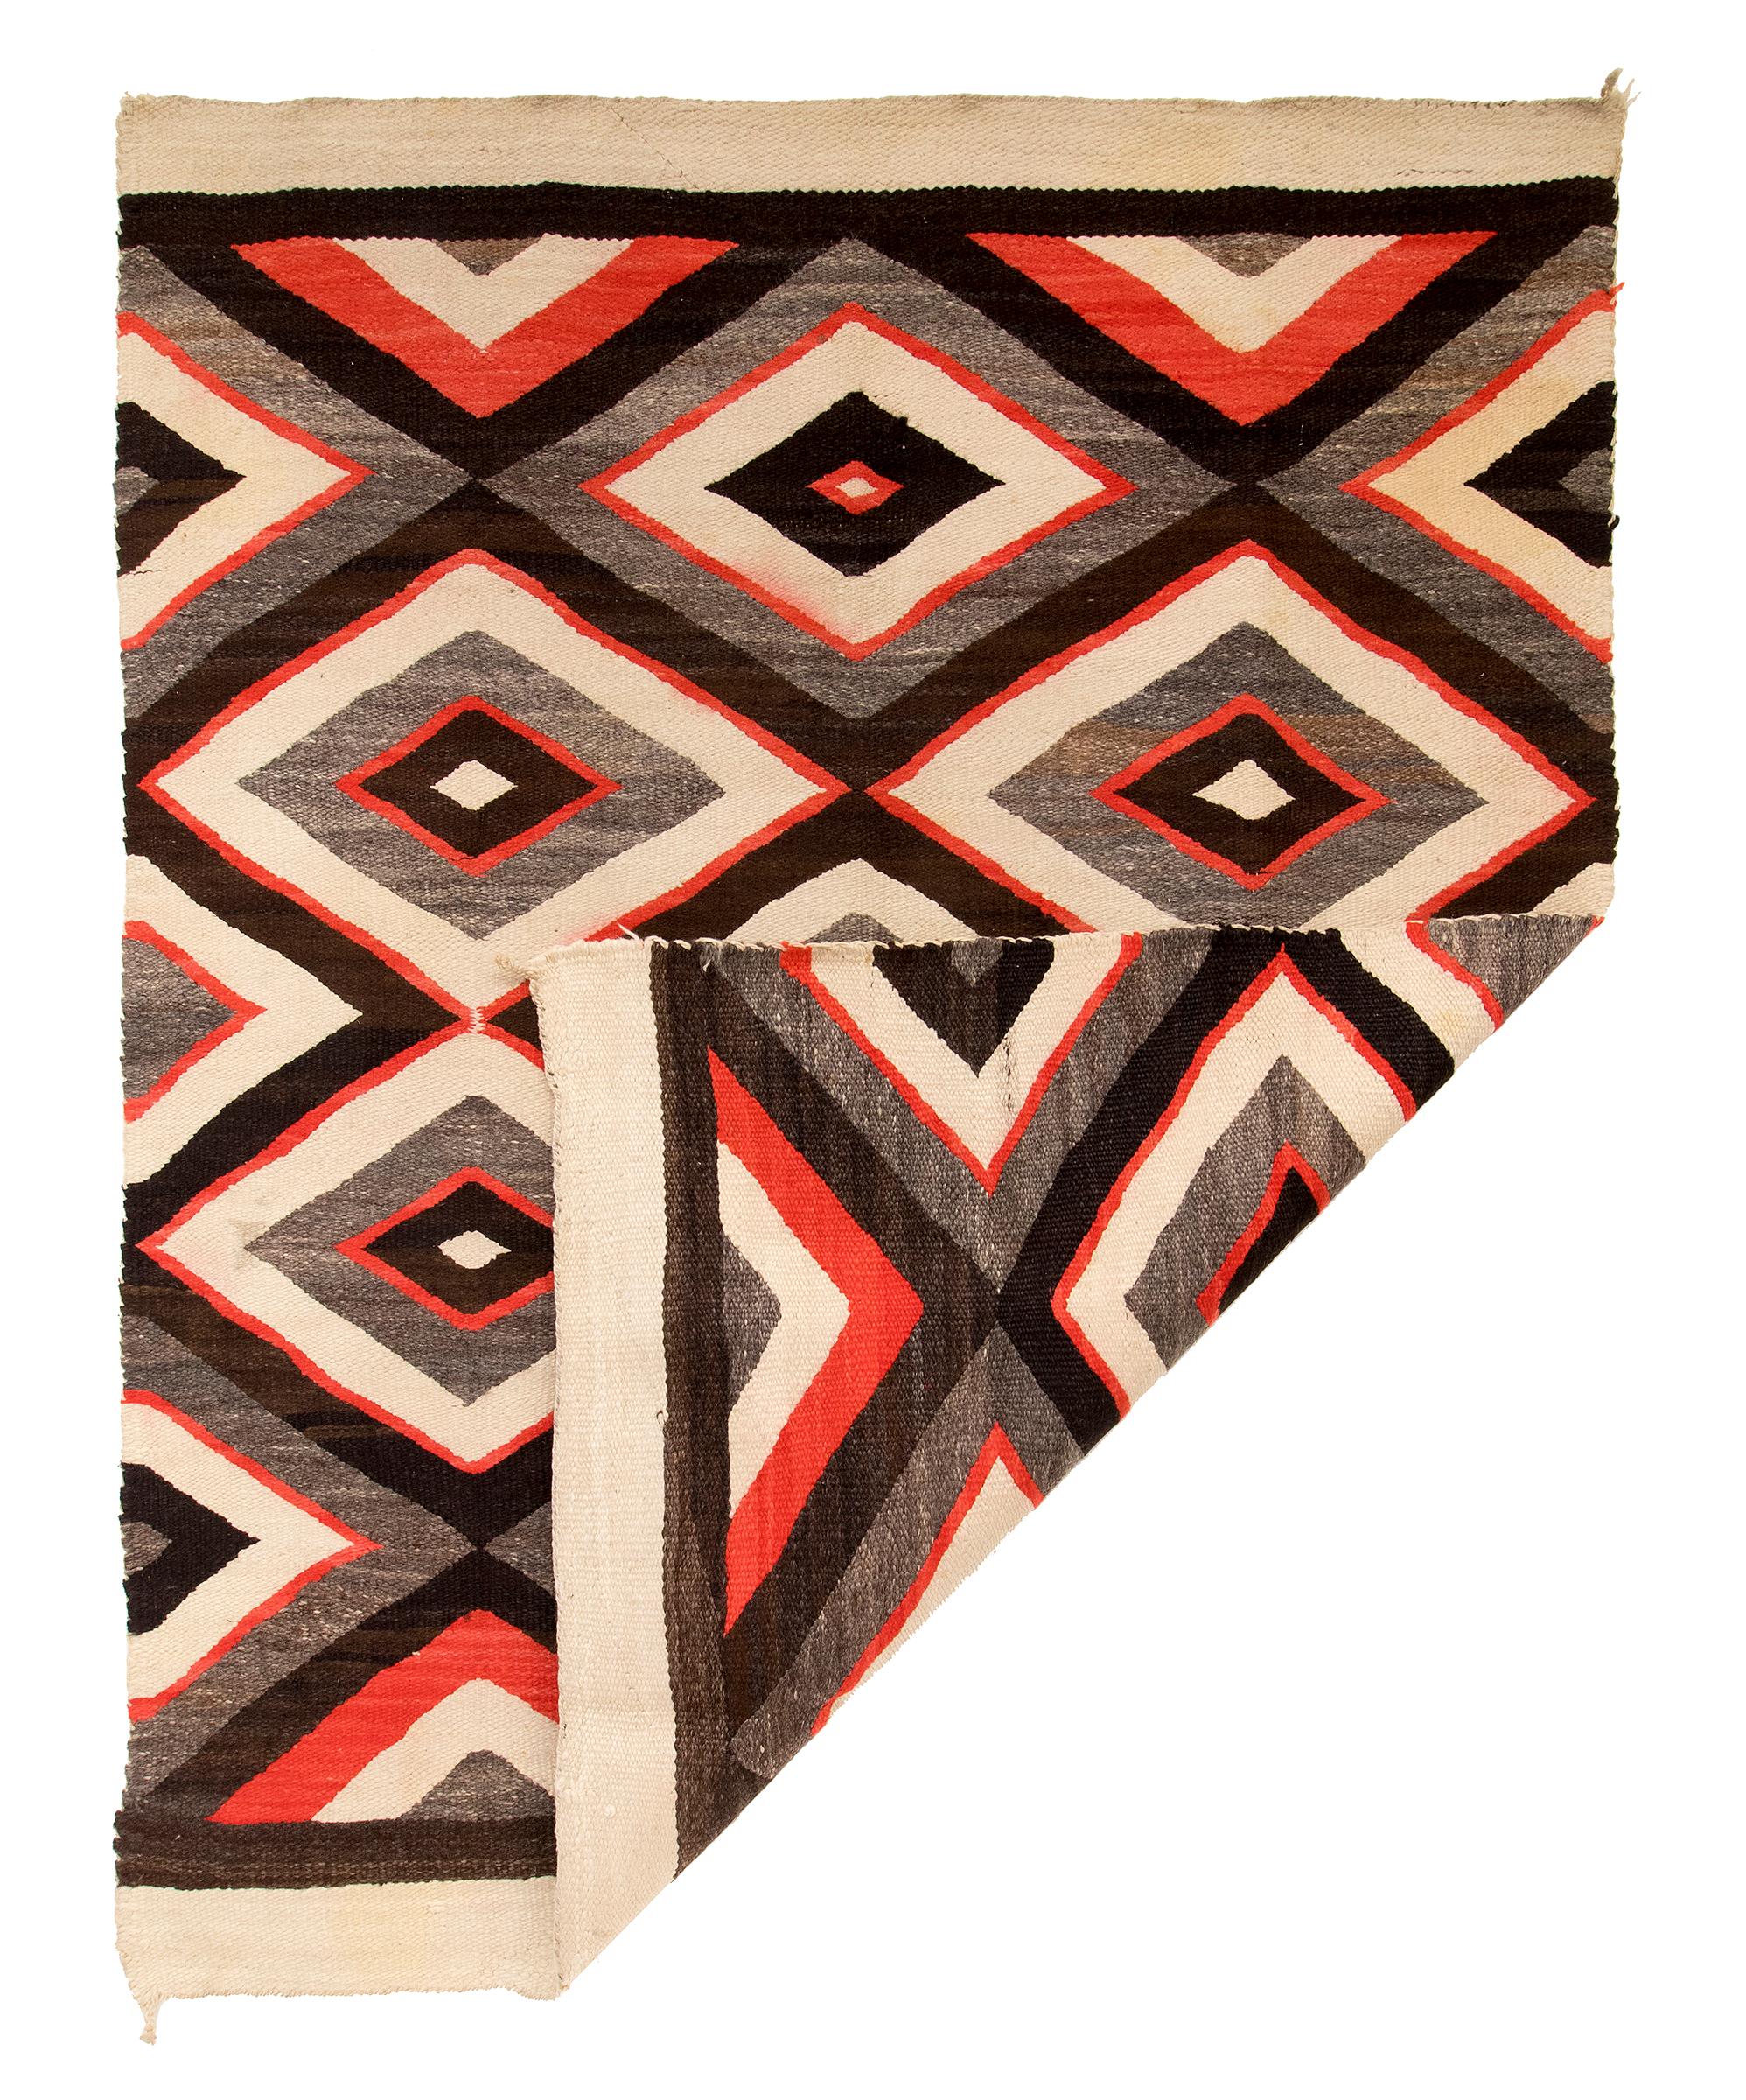 Vintage circa 1920 - 1930s Diné Navajo rug, pan-reservation, Trading Post era. Tissé en losange de laine indigène filée à la main dans des couleurs de toison naturelle de brun noir, gris brun et ivoire (blanc) avec du rouge teint à l'aniline. Ce